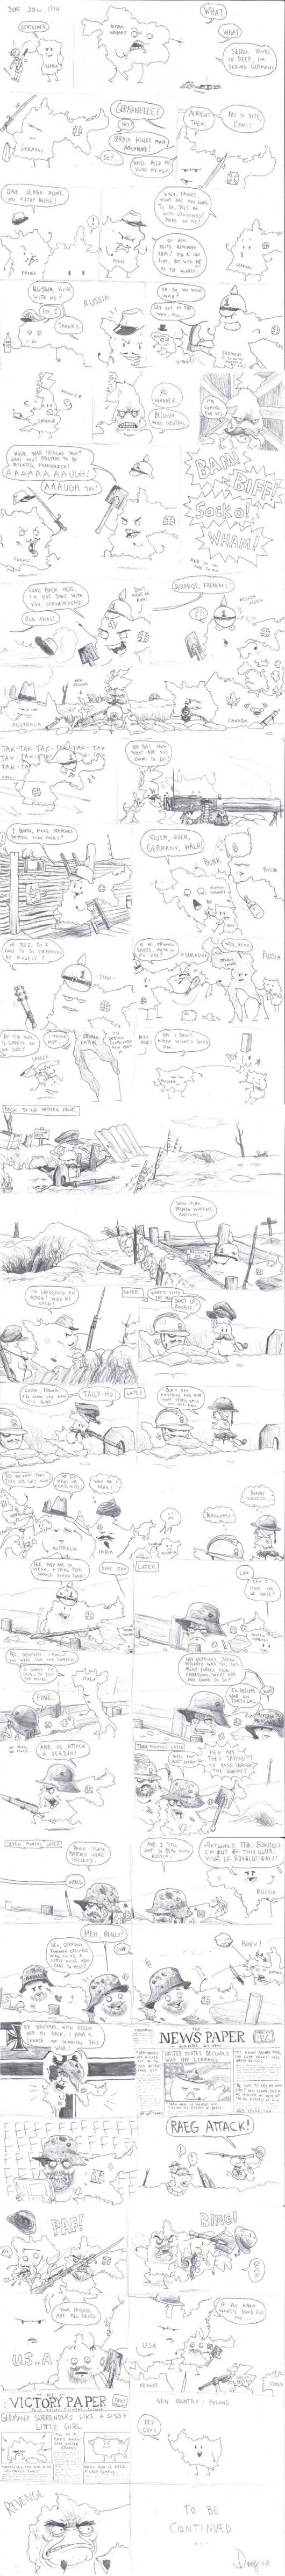 WW1 explained